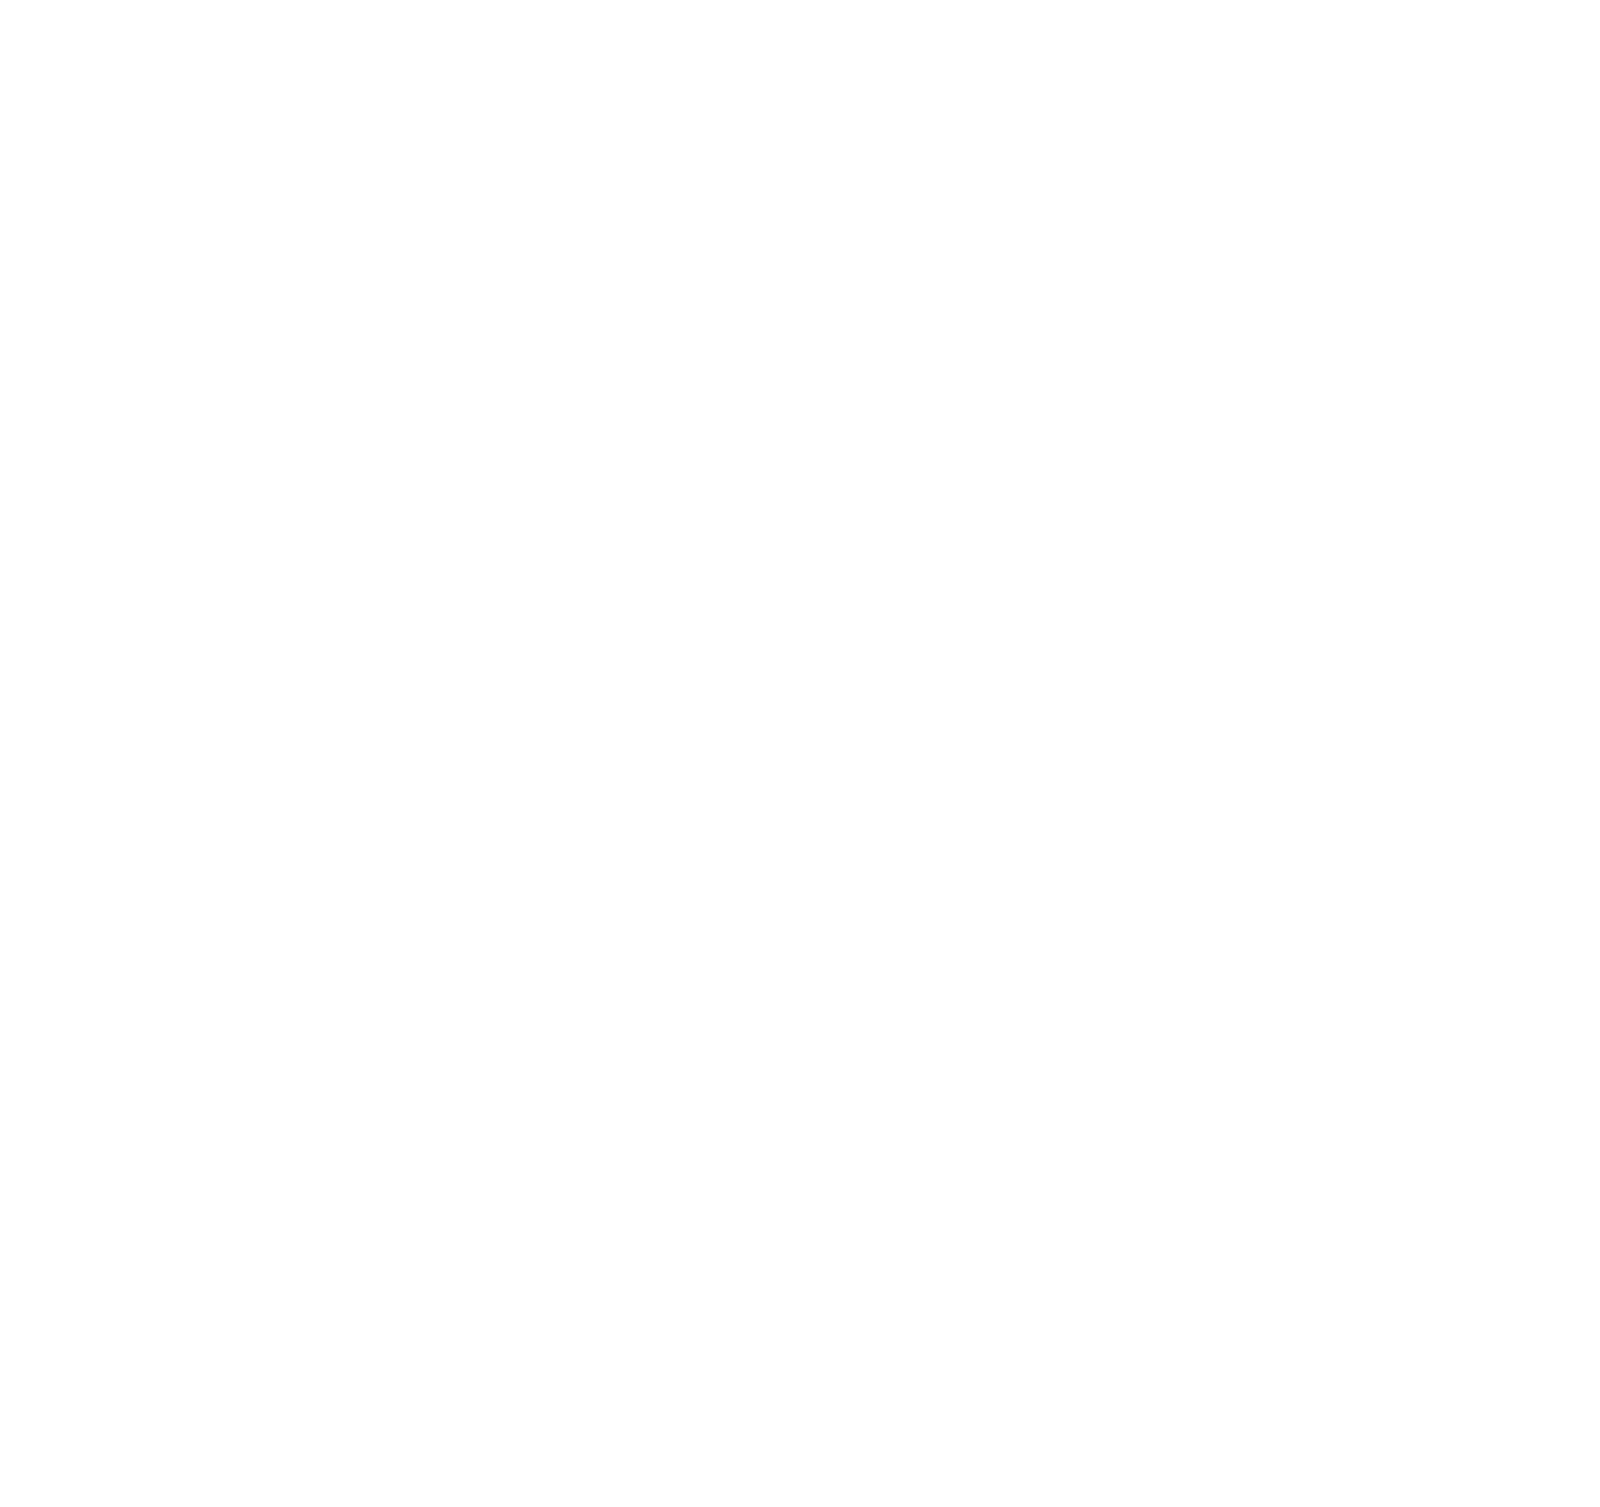 FDP - Foi de Propósito 4 - Comprar em Buró